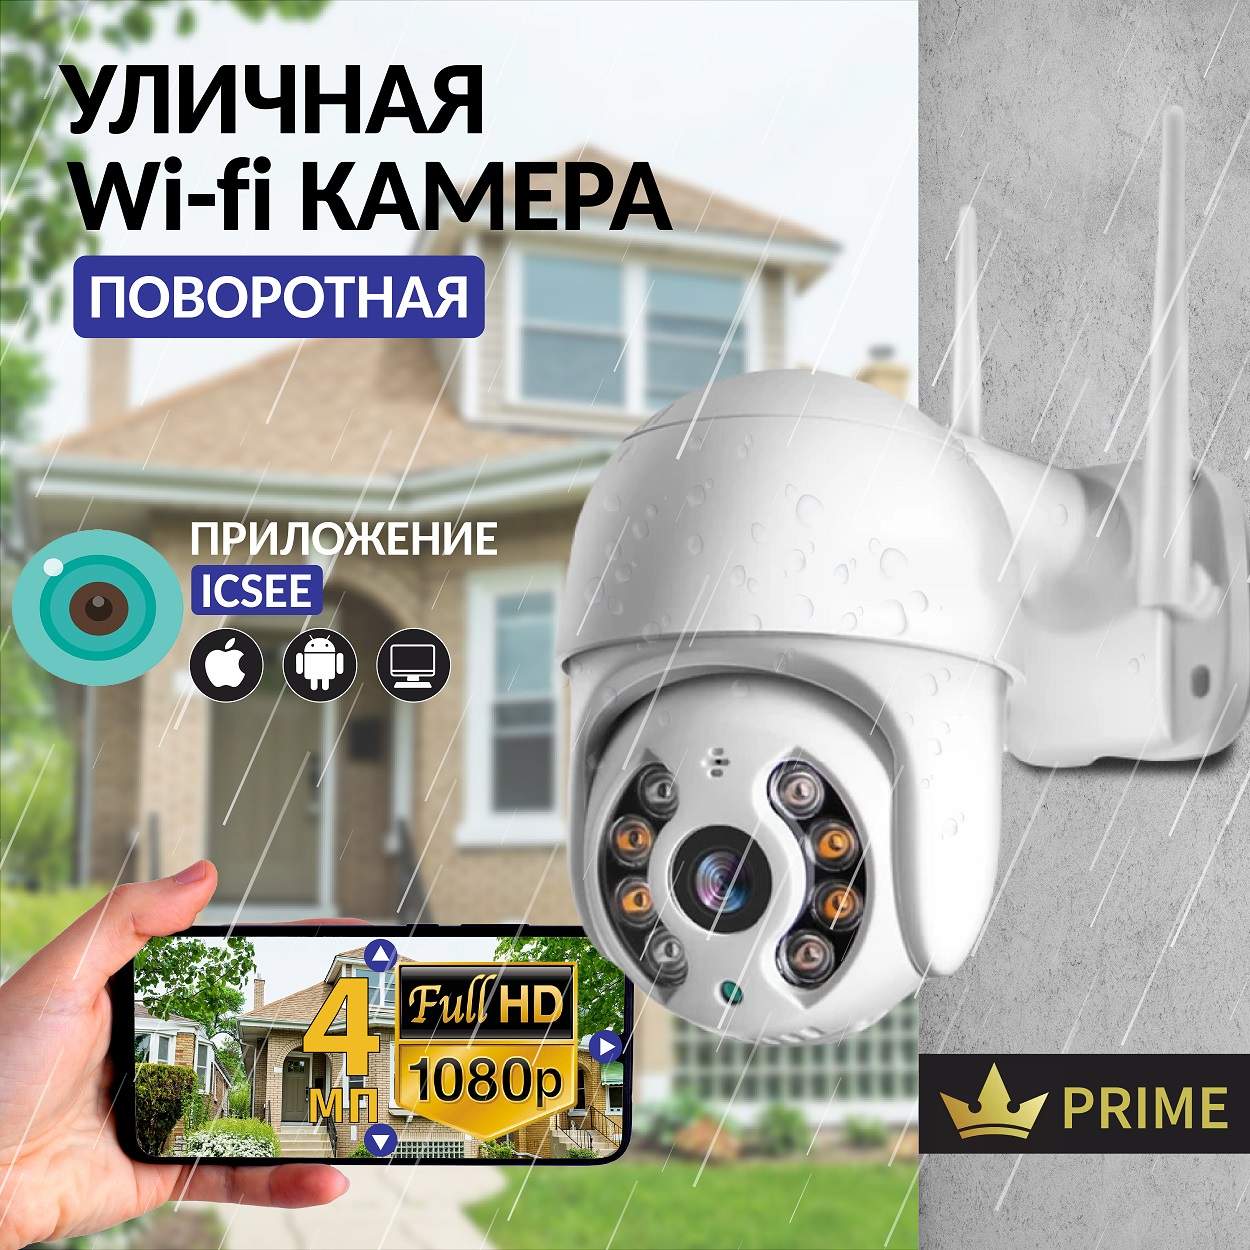 Камера видеонаблюдения IP VG-1360 Wifi уличная поворотная 4 Мп, VVG6986328